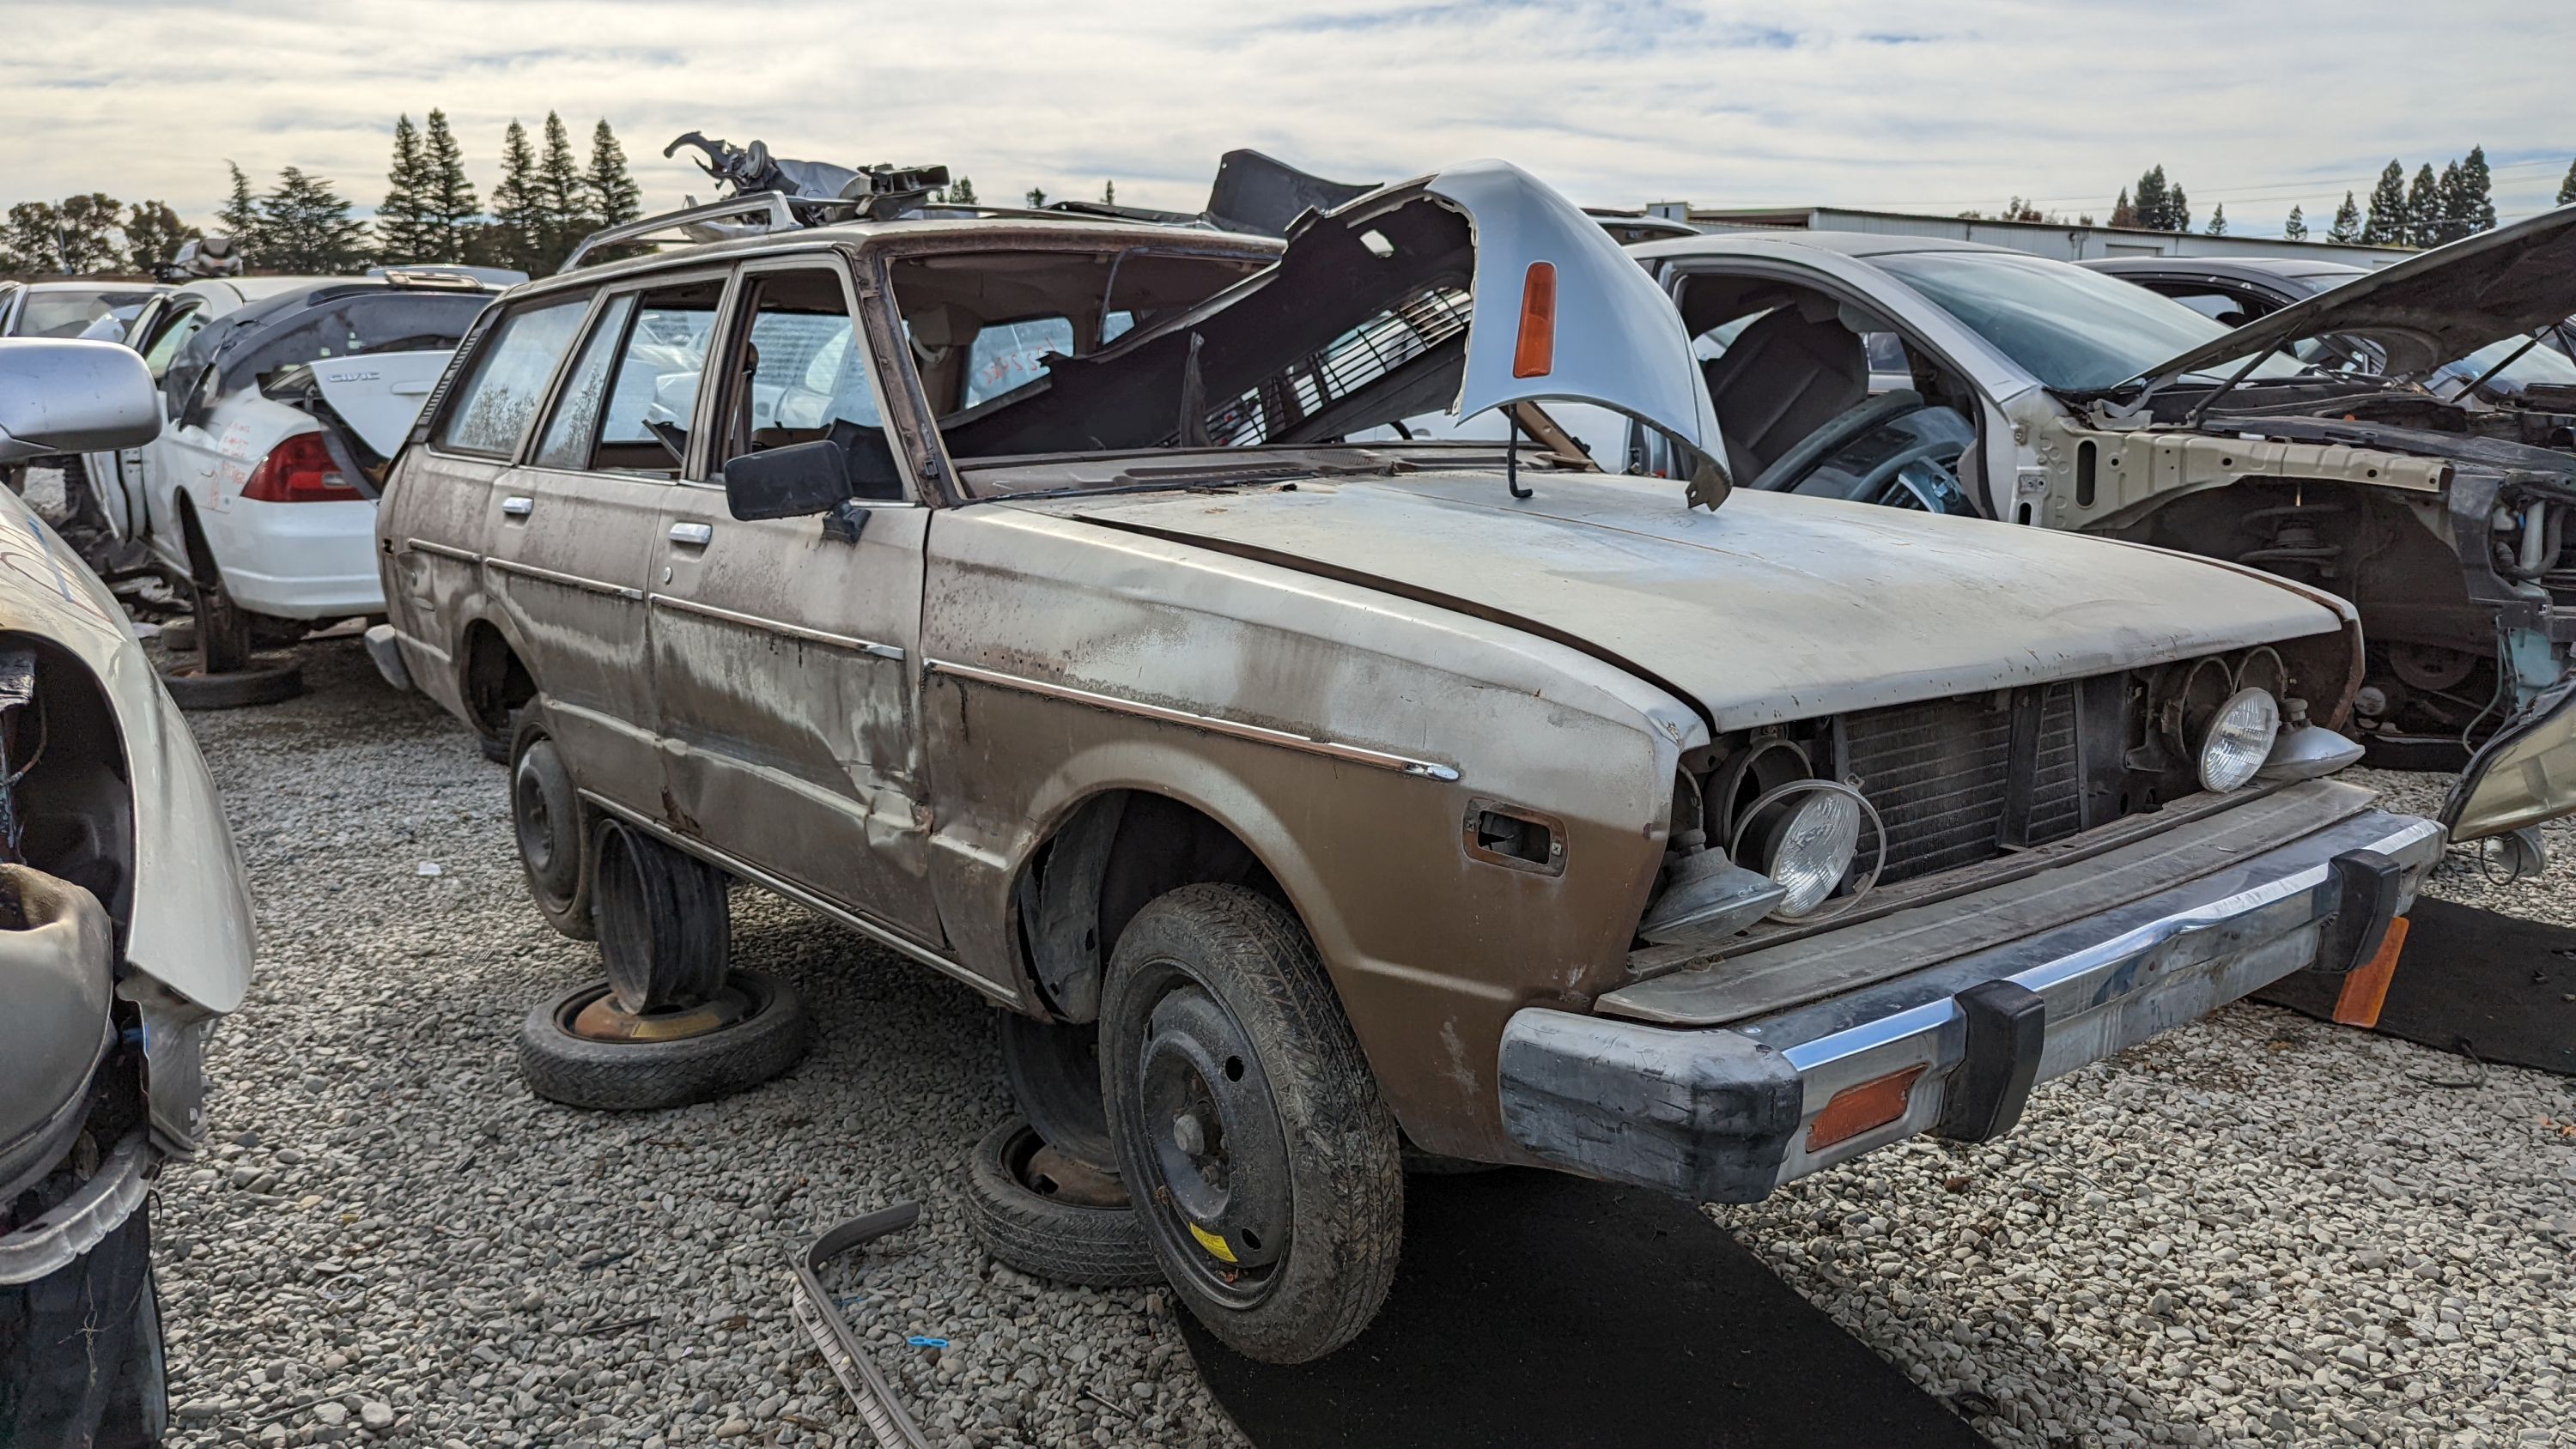 99 - 1978 Datsun 510 wagon in California junkyard - photo by Murilee Martin